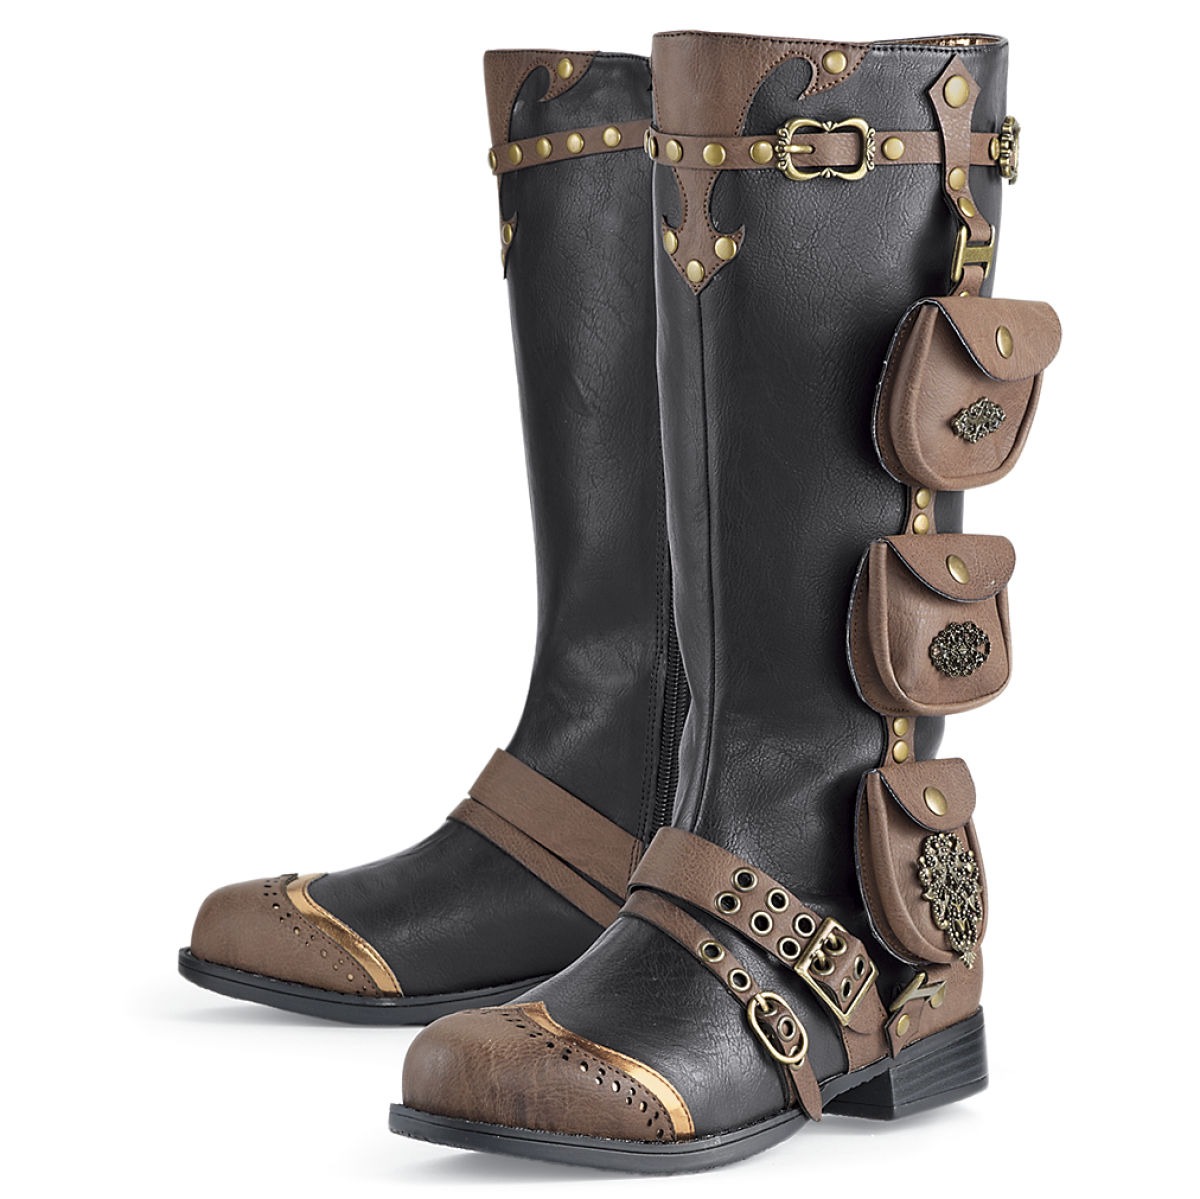 Men's Wildwalker Boots steampunk buy now online